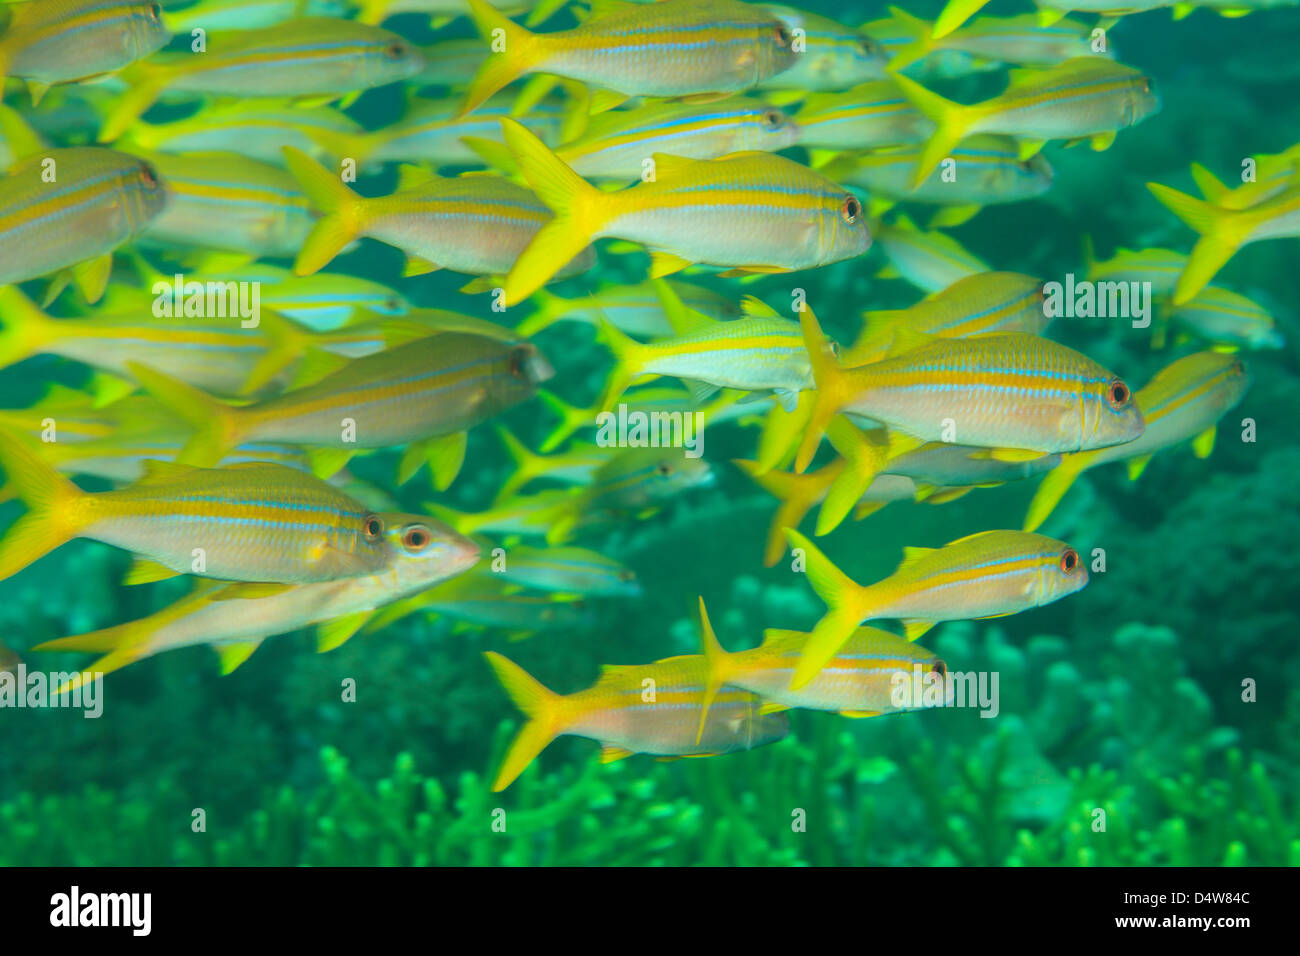 School of goatfish swimming underwater Stock Photo